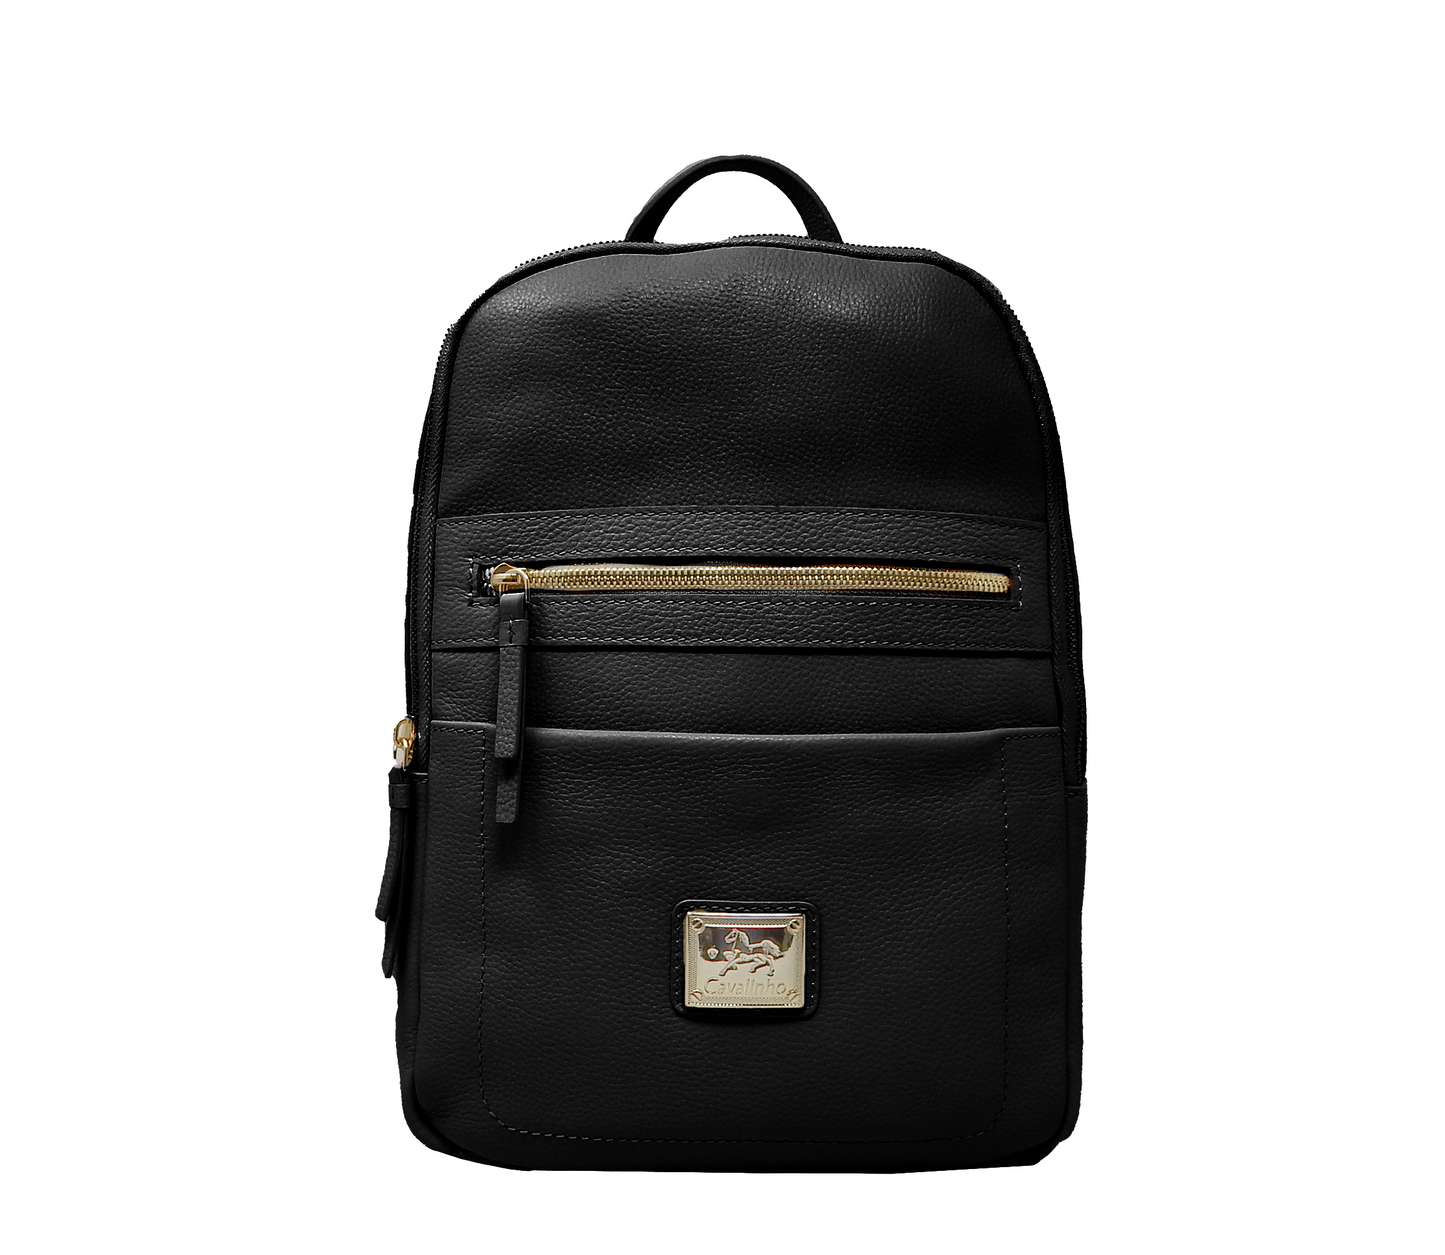 Cavalinho Infinity Pebbled Leather Backpack - Black - 18230461_01_f